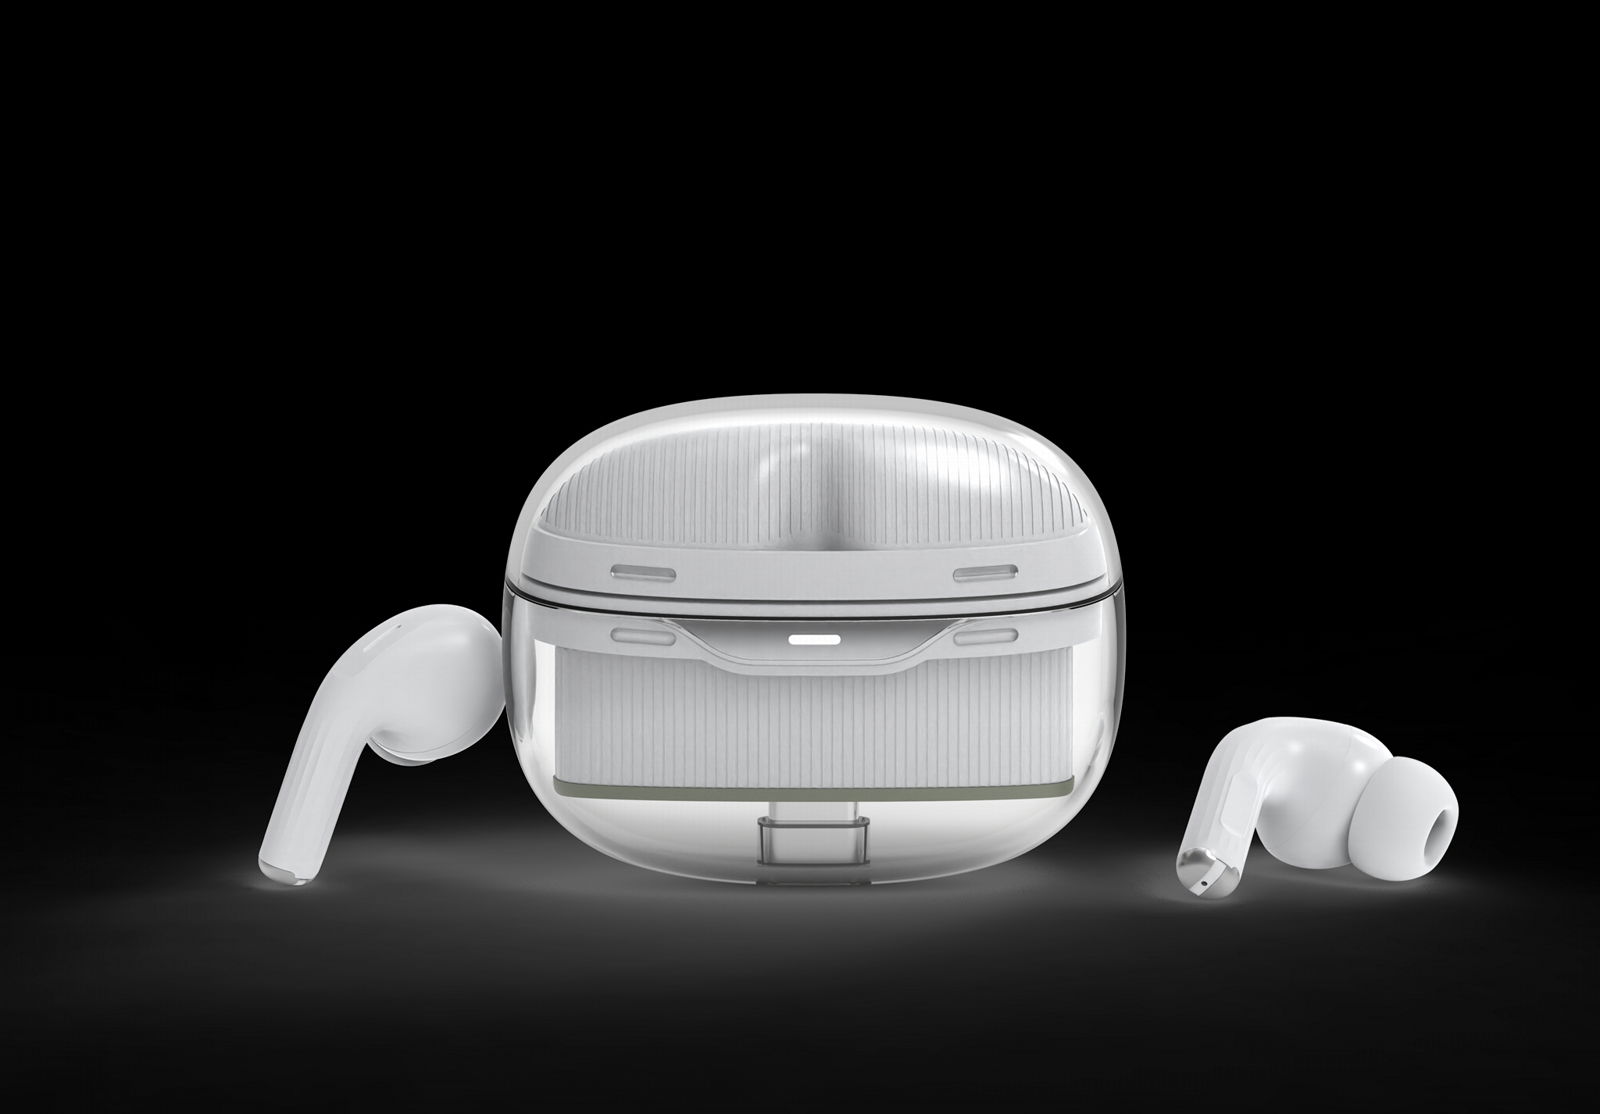 New Arrival MK015 TWS Earphones BT True Wireless Stereo Earbuds 3